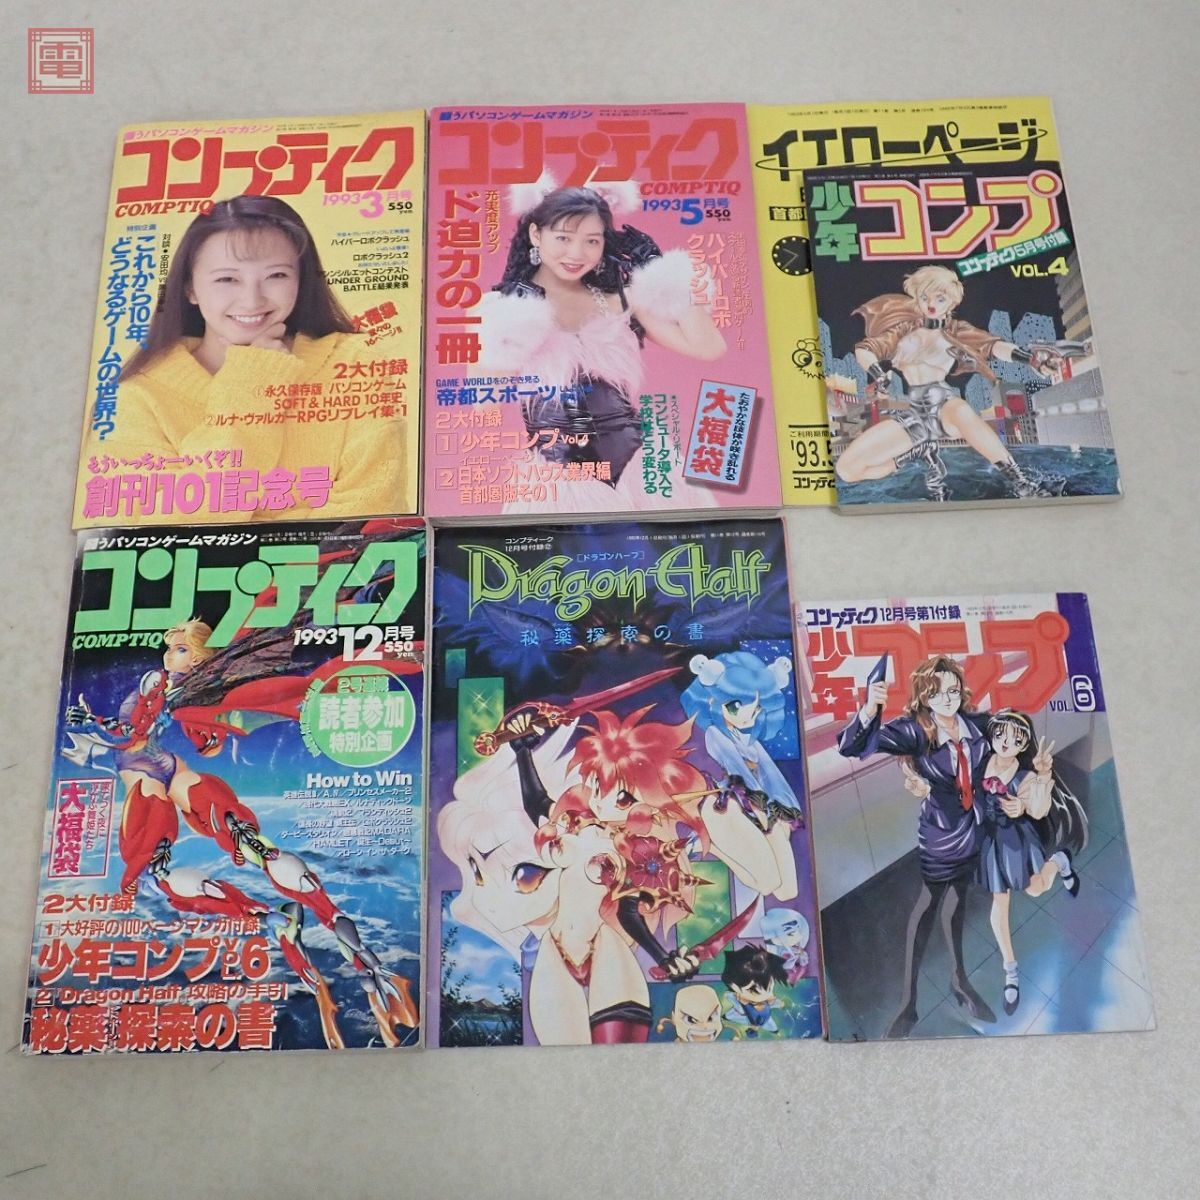  журнал comp чай k1992 год ~1994 год 18 шт. комплект не комплект Kadokawa Shoten [20